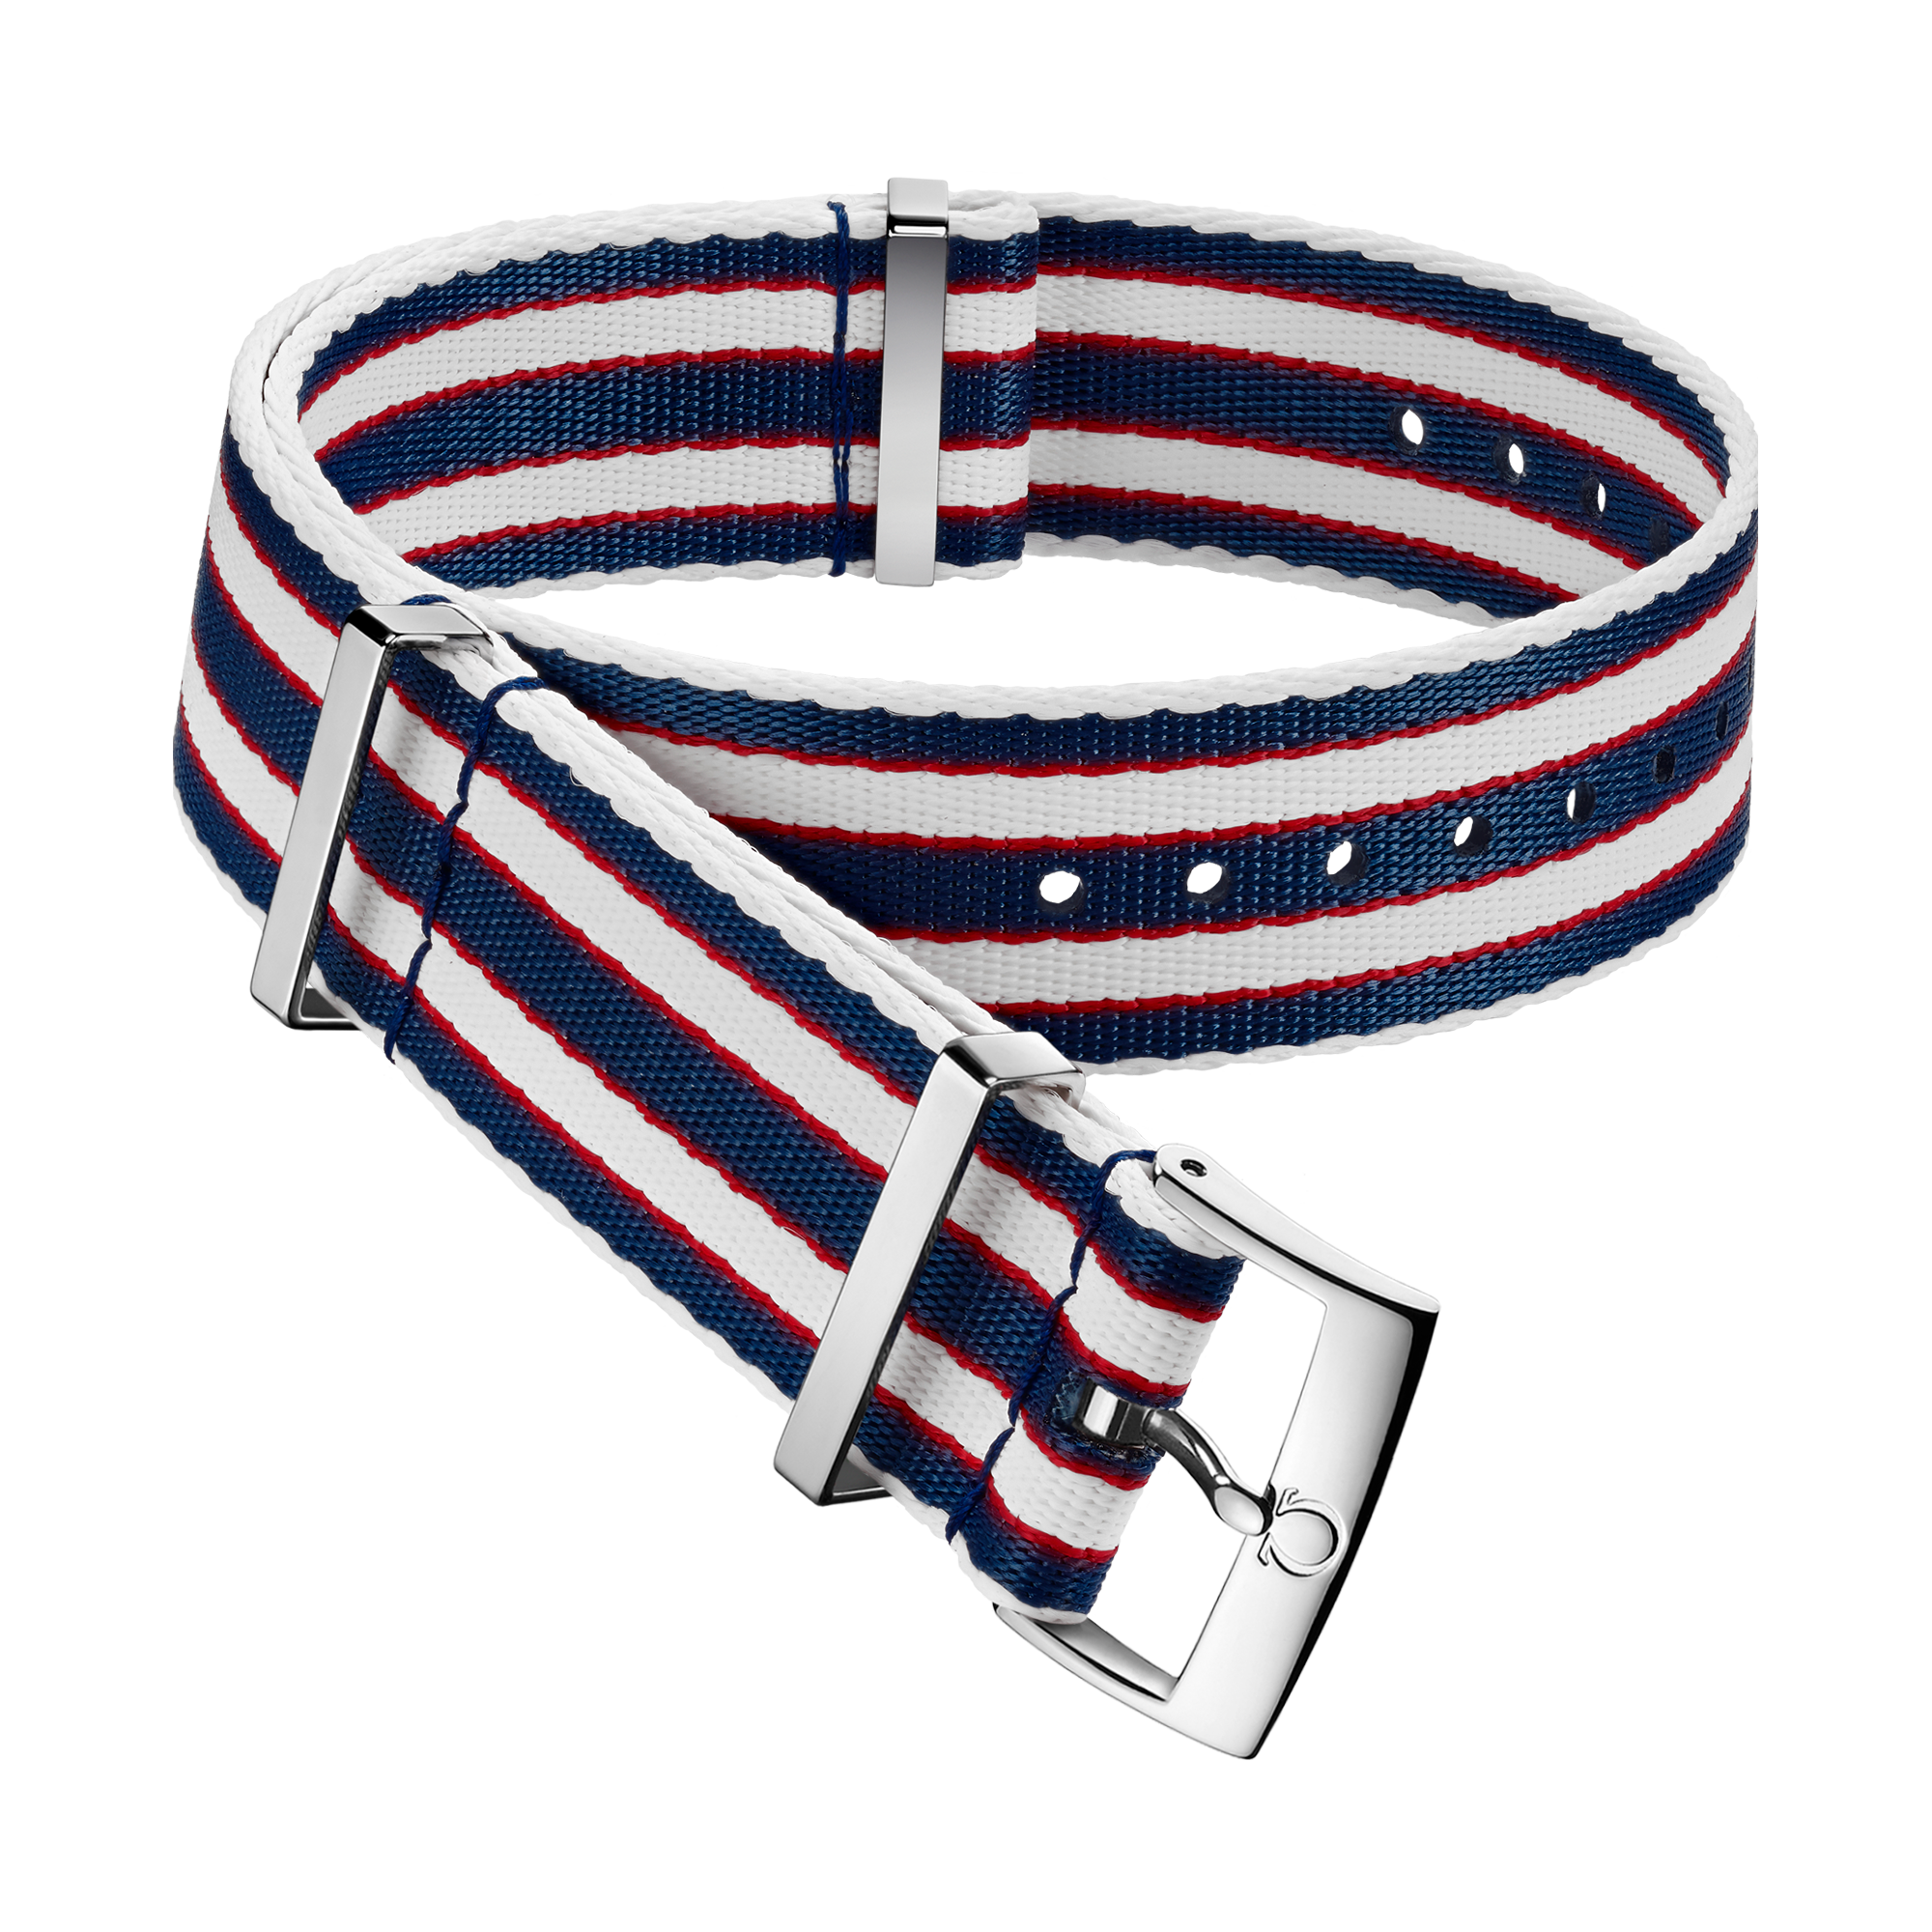 Bracelete NATO - Bracelete em poliamida azul, vermelha e branca às riscas - 031CWZ010694